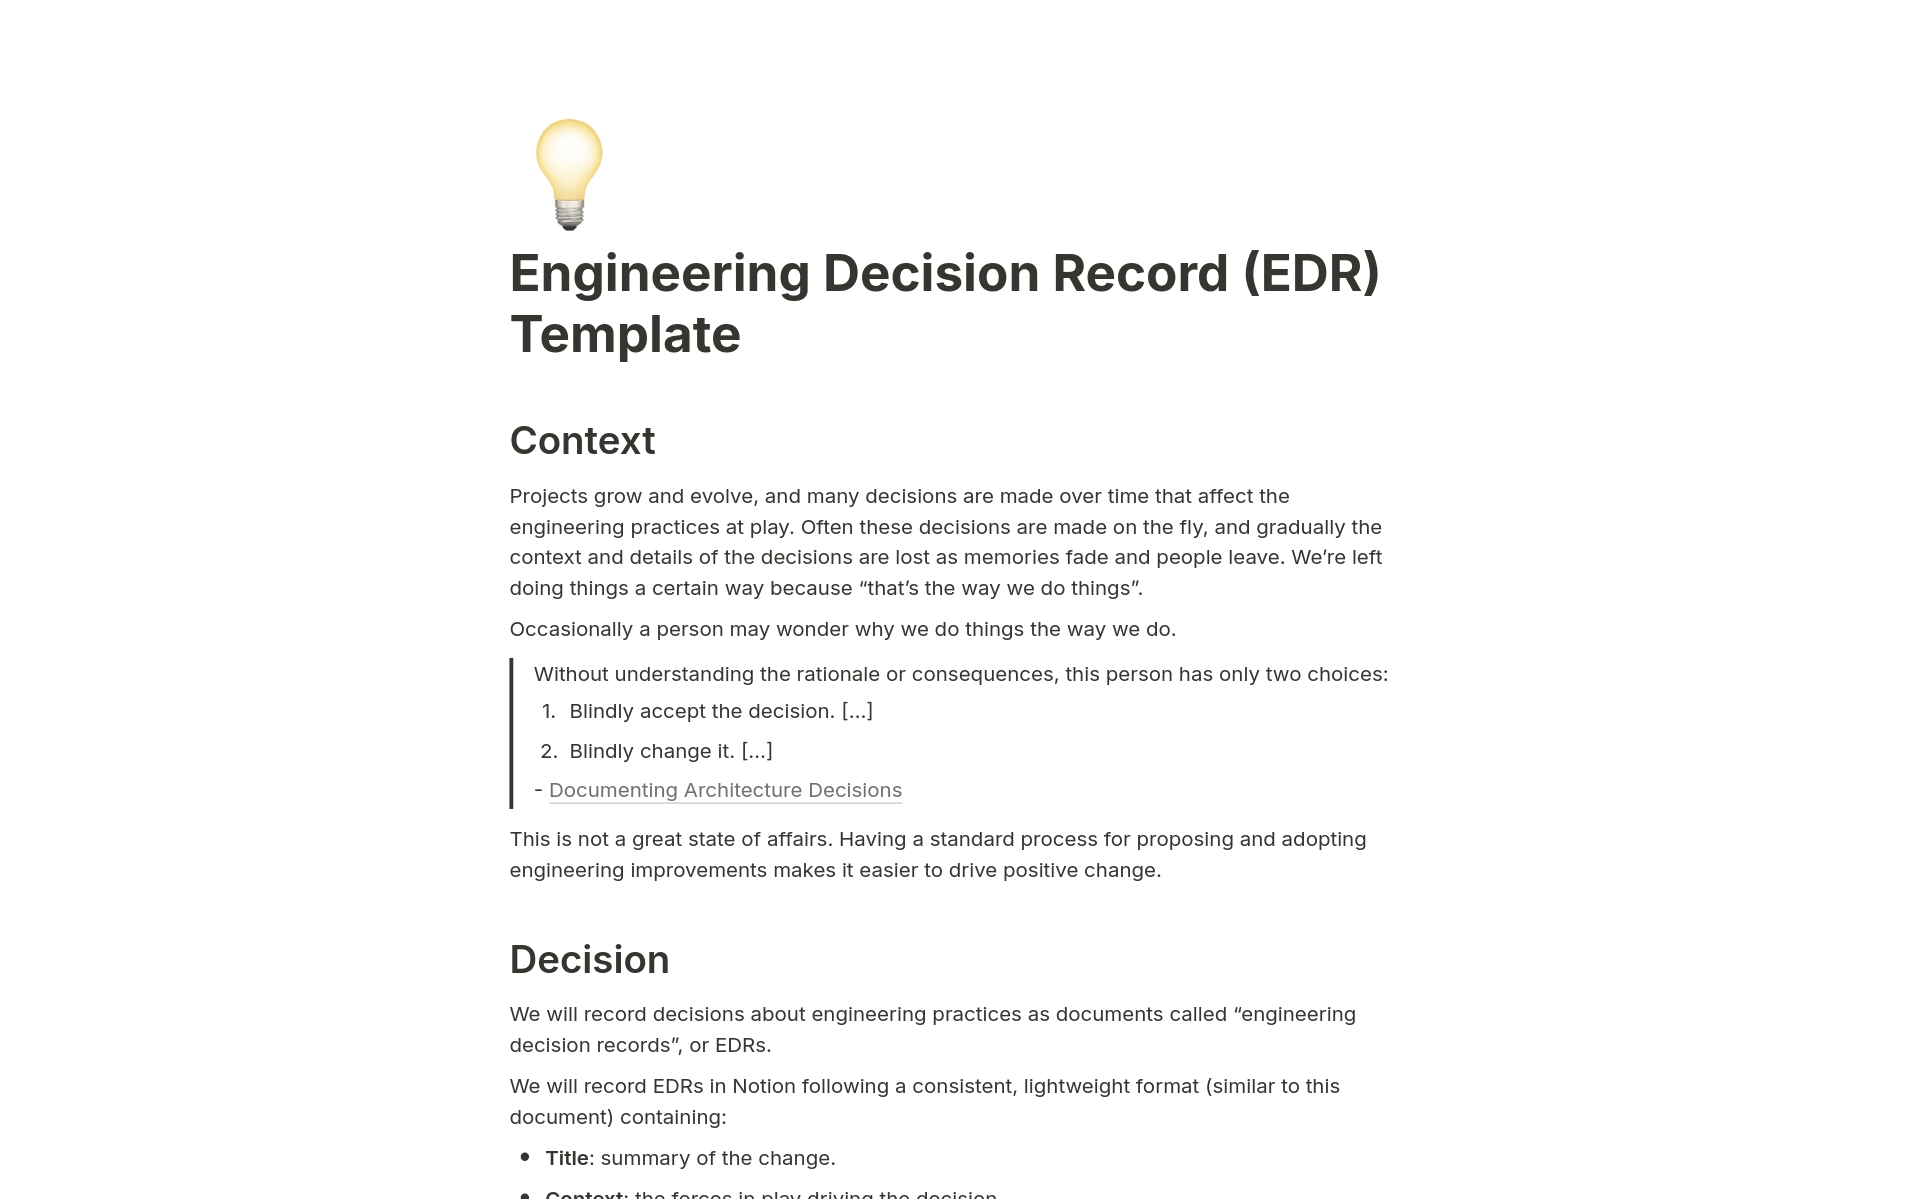 Uma prévia do modelo para Engineering Decision Record (EDR)